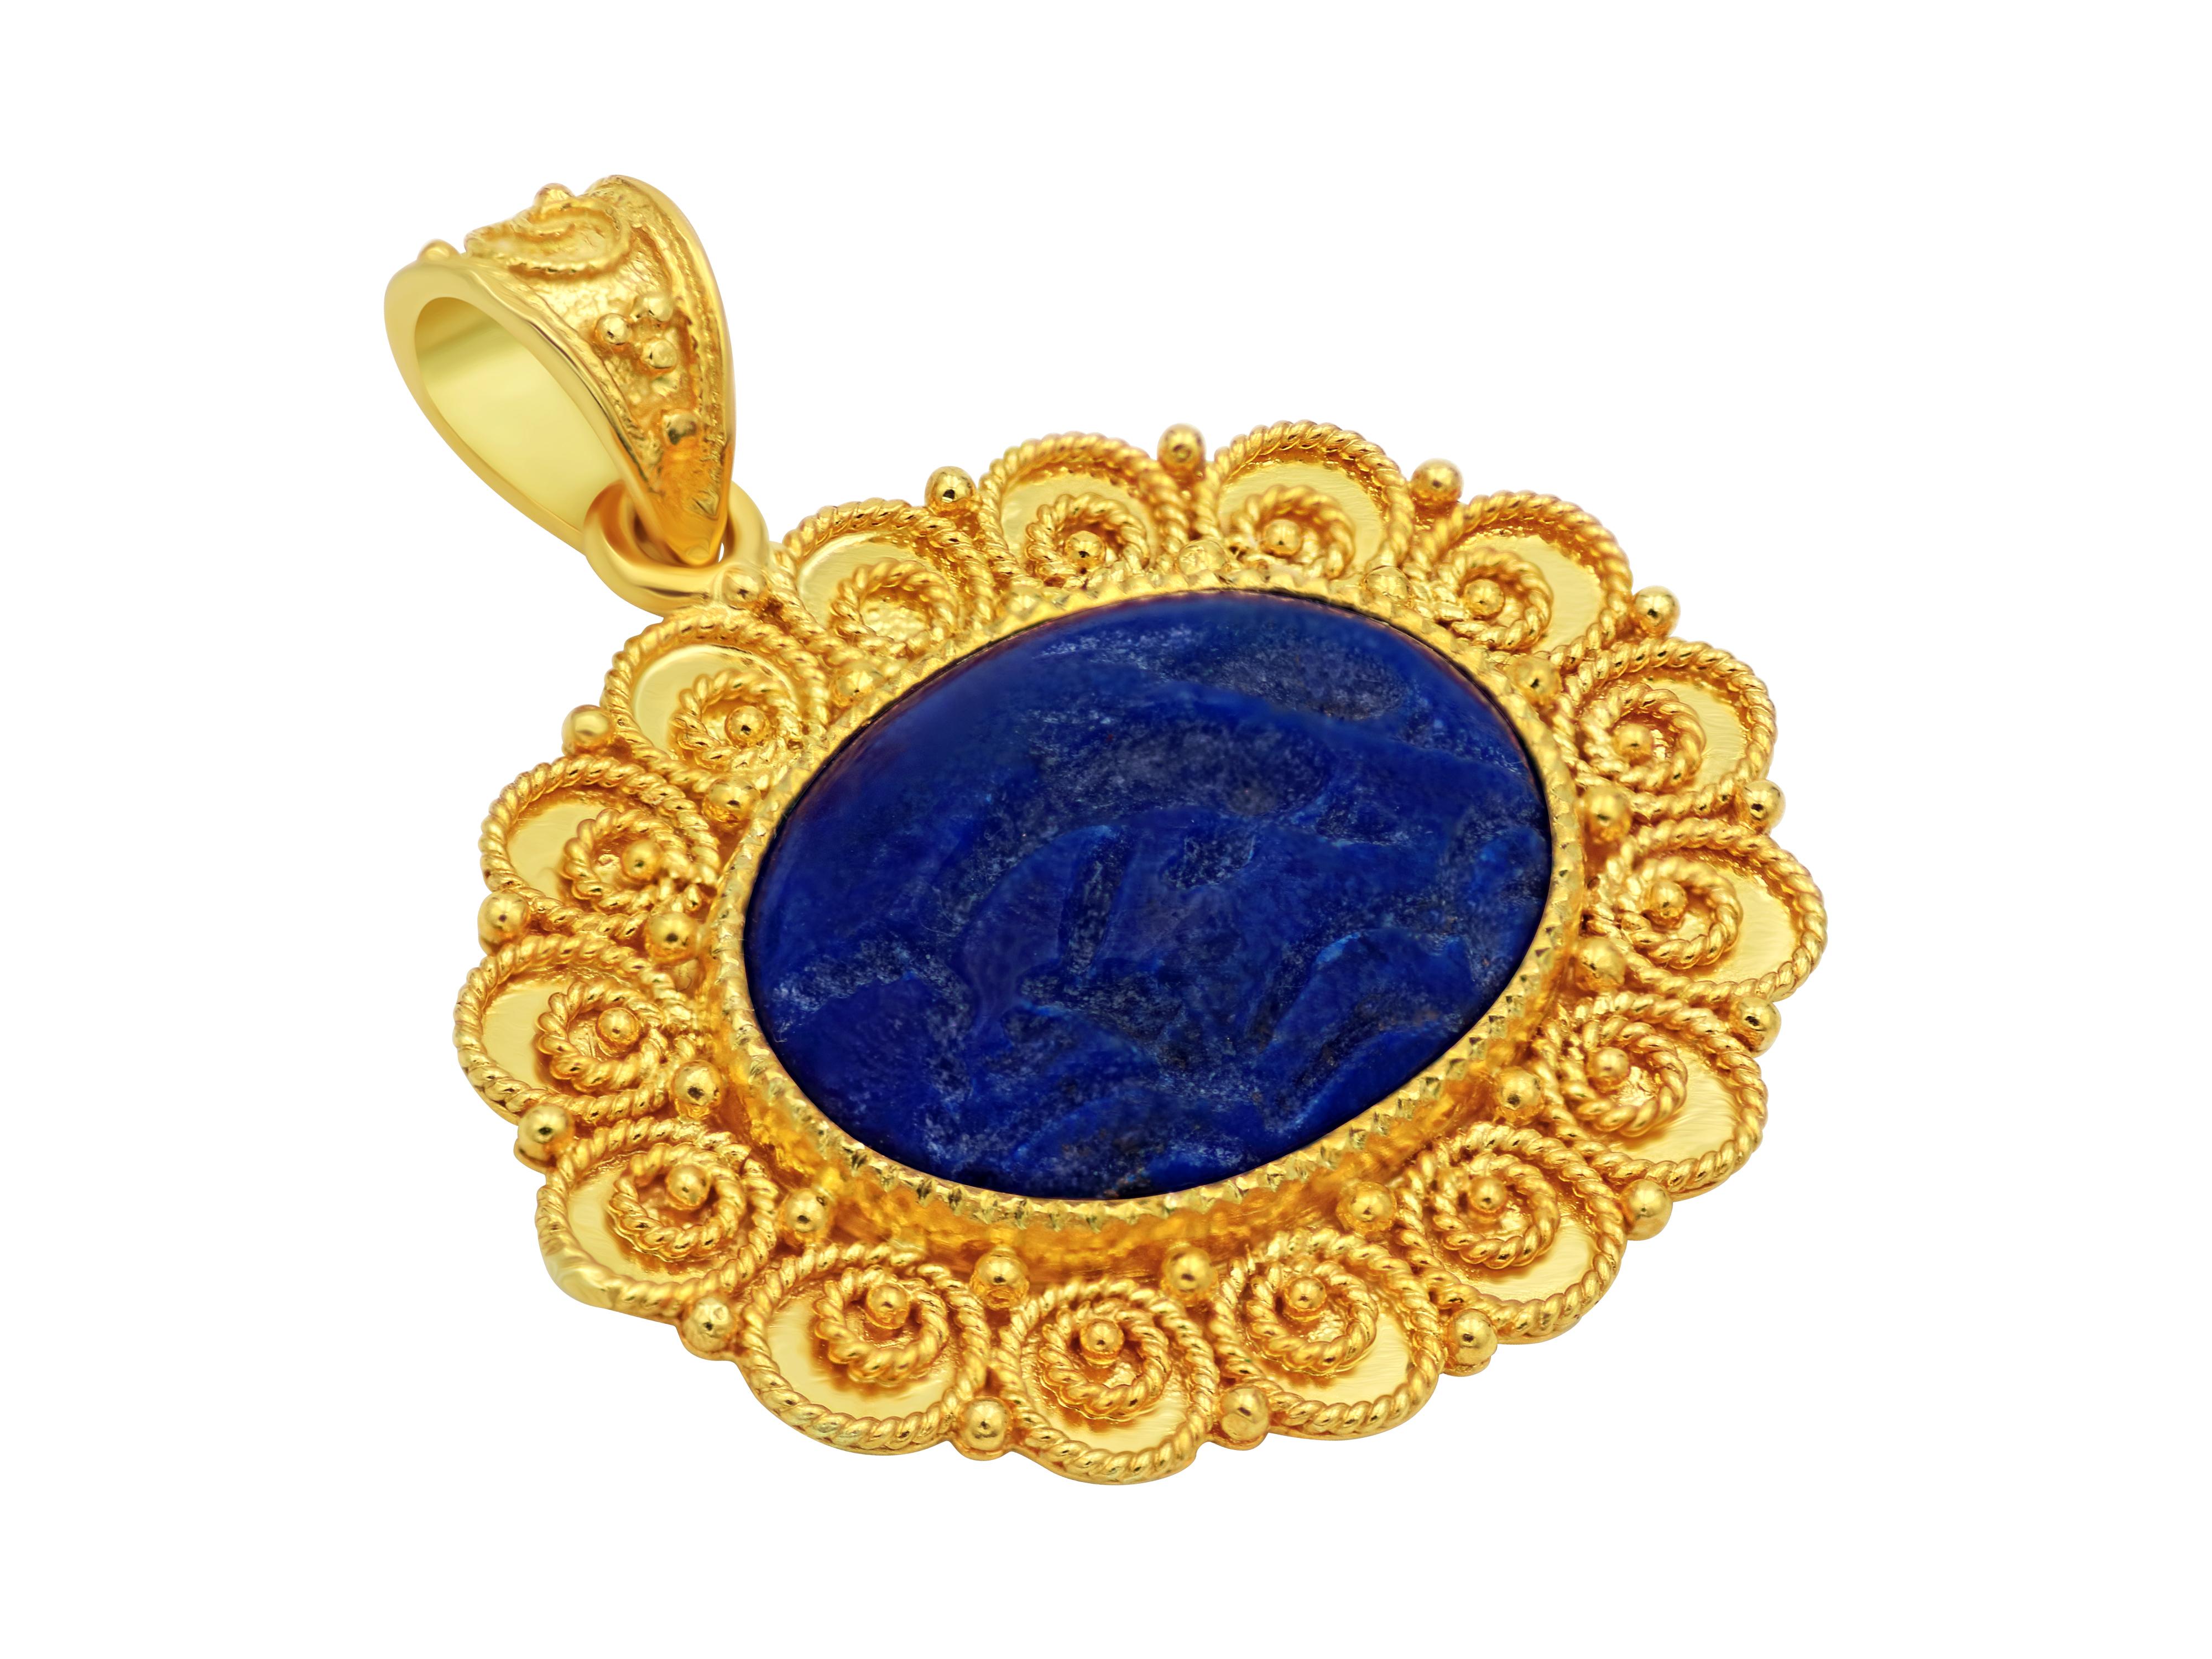 Pendentif en or jaune 18 carats mettant en valeur un solide morceau de lapis-lazuli de qualité AAA d'un bleu profond avec des dauphins sculptés, symbole de l'amour.  Le sertissage est formé par des graduations en filigrane placées géométriquement